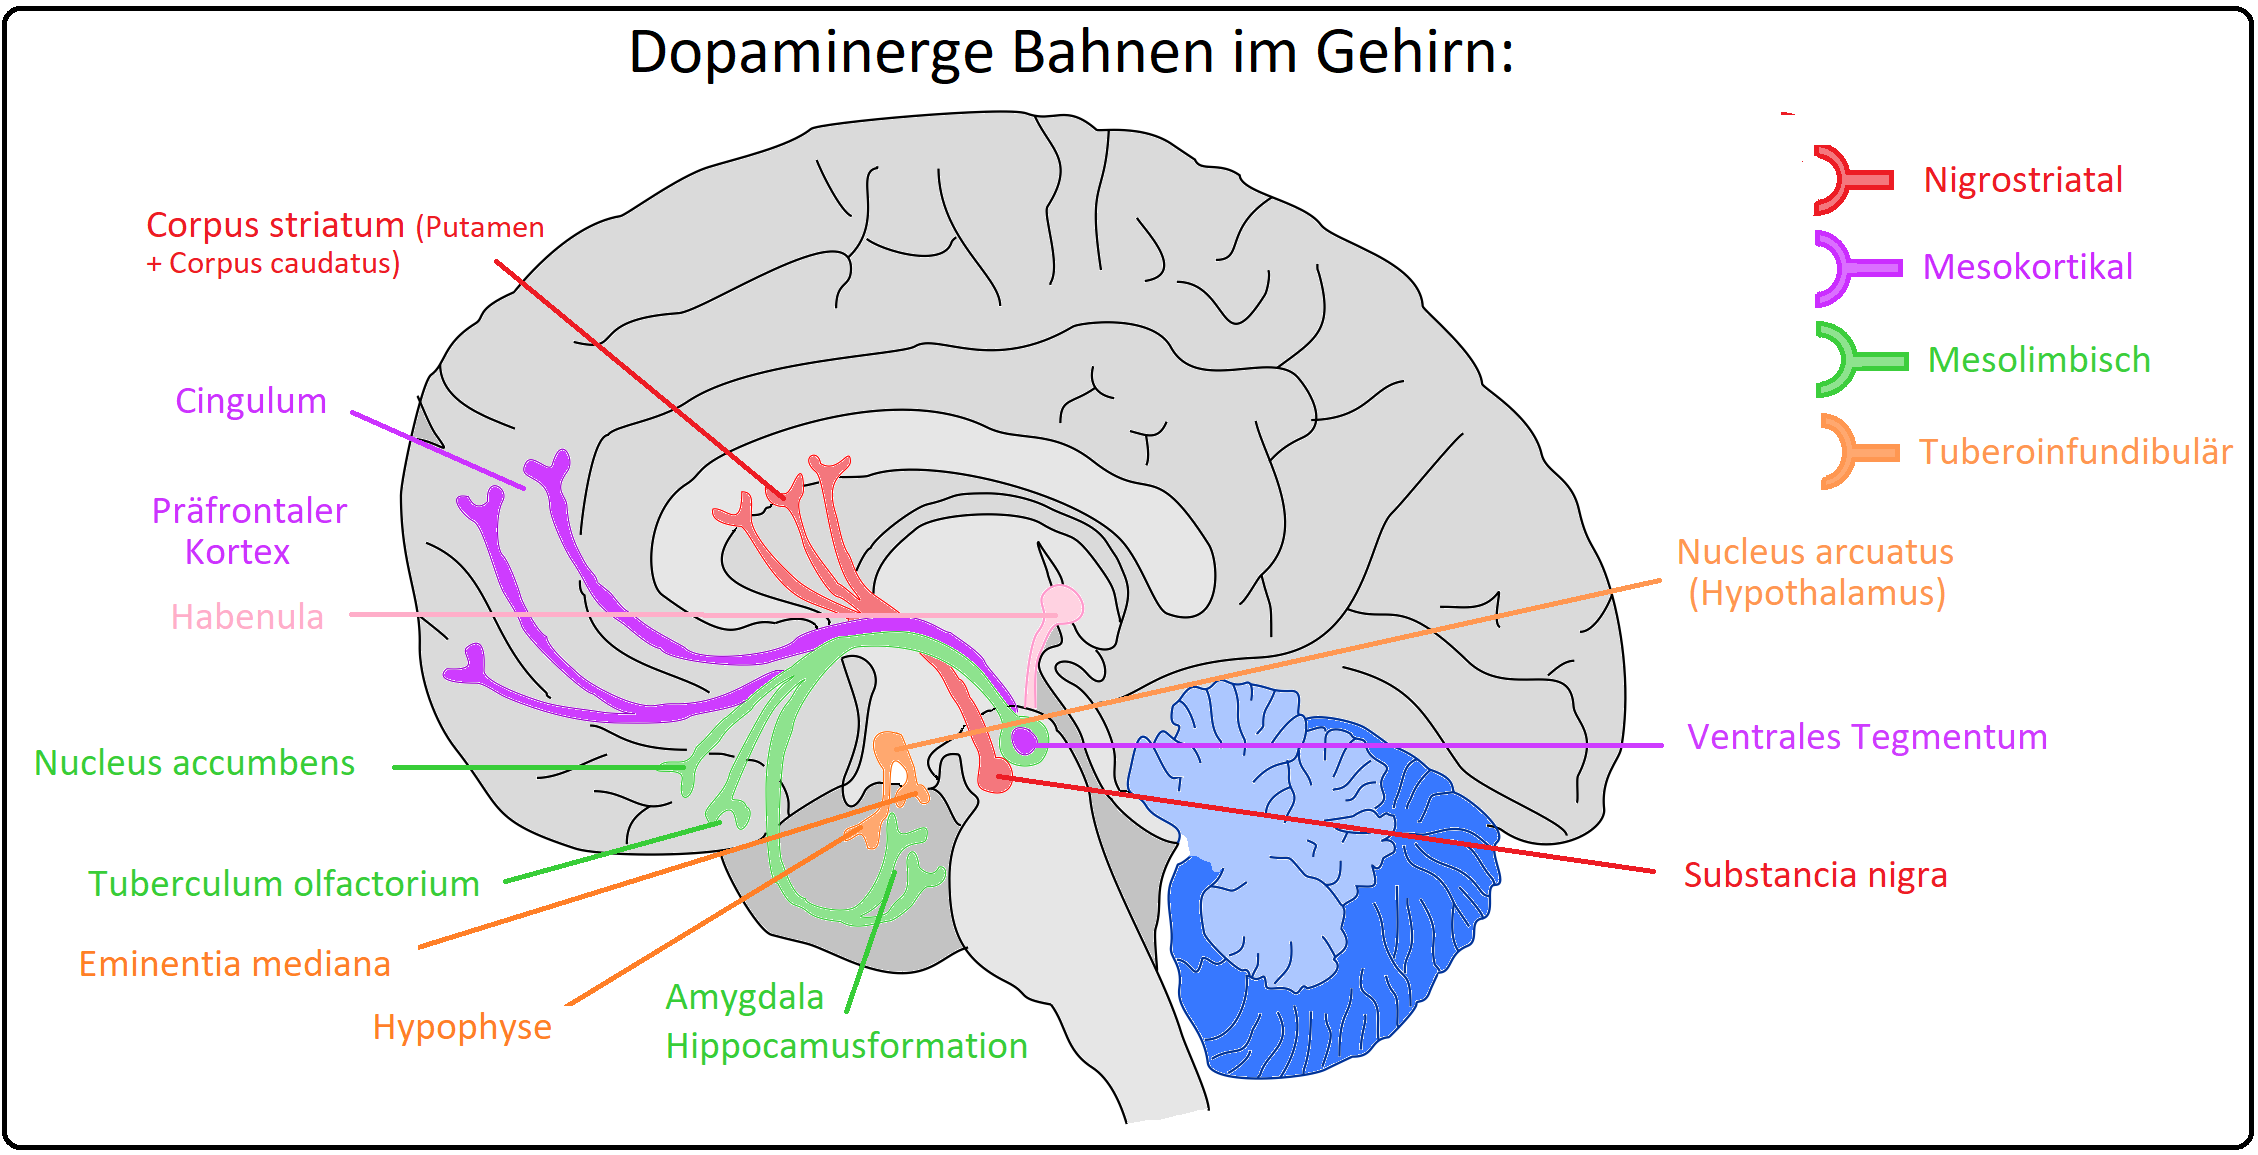 585 Dopaminerge Bahnen im Gehirn